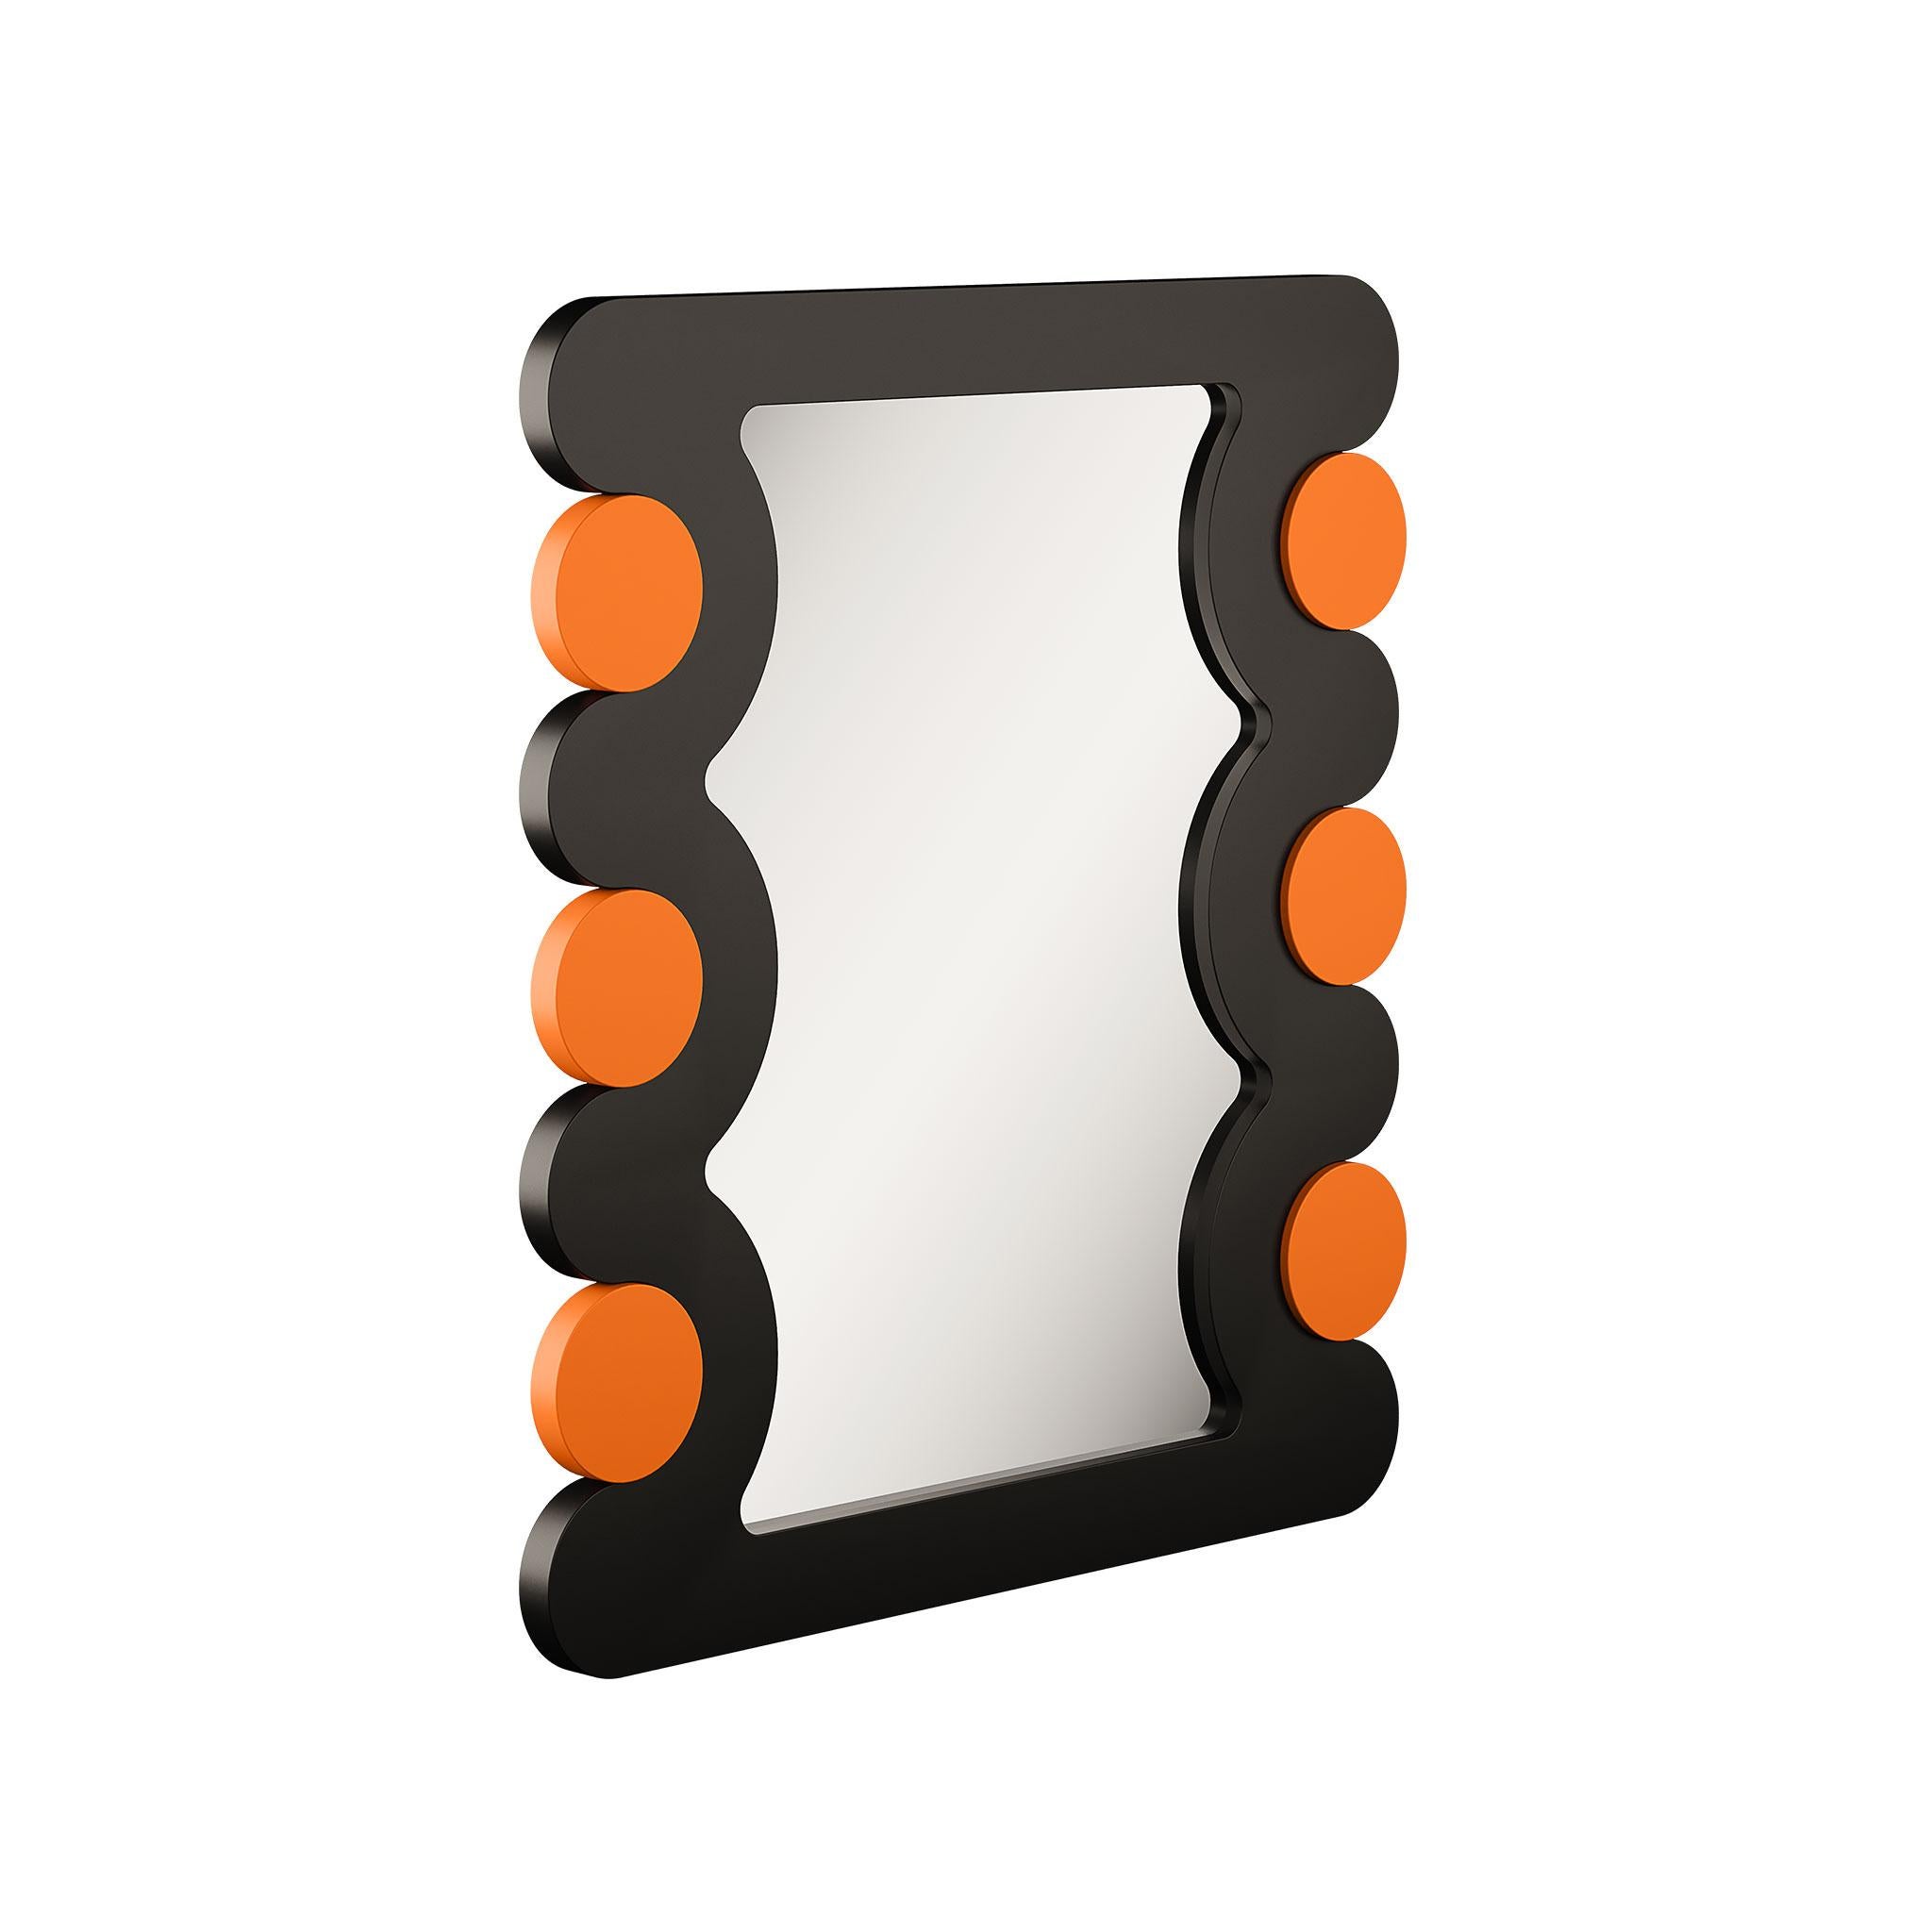 Erhöhen Sie die Ästhetik Ihres Raumes mit unserem Spiegel aus lackiertem Holz in leuchtenden Orange- und Schwarztönen, der sorgfältig von Hand geschnitzt und handgefertigt wurde. Dieser Spiegel ist nicht nur ein funktioneller Gegenstand, sondern ein